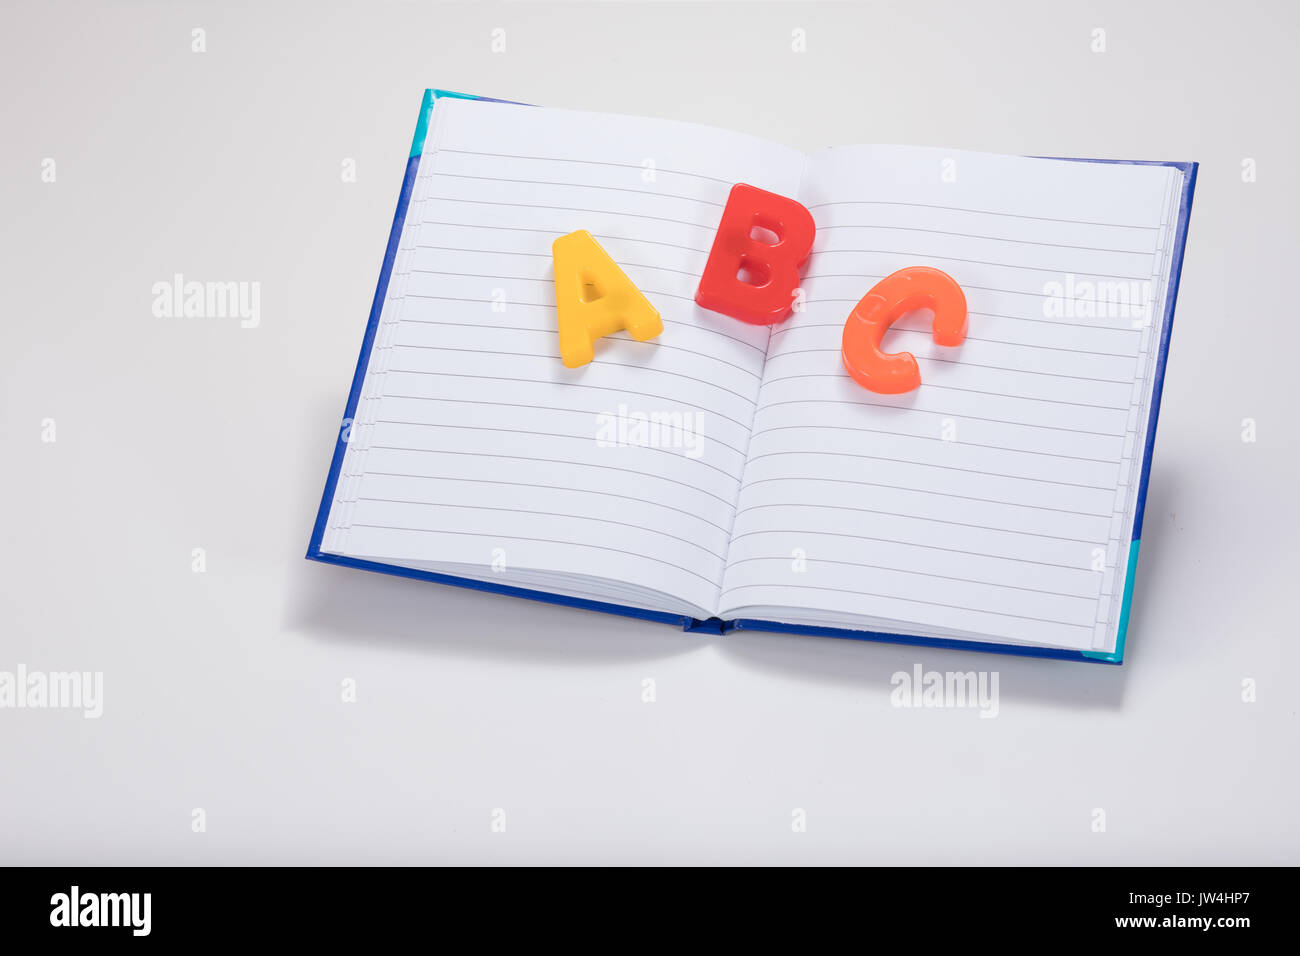 Abrir un libro escolar en blanco, con el aprendizaje de las letras del alfabeto ABC multicolores y llano fondo blanco con espacio de copia. Foto de stock